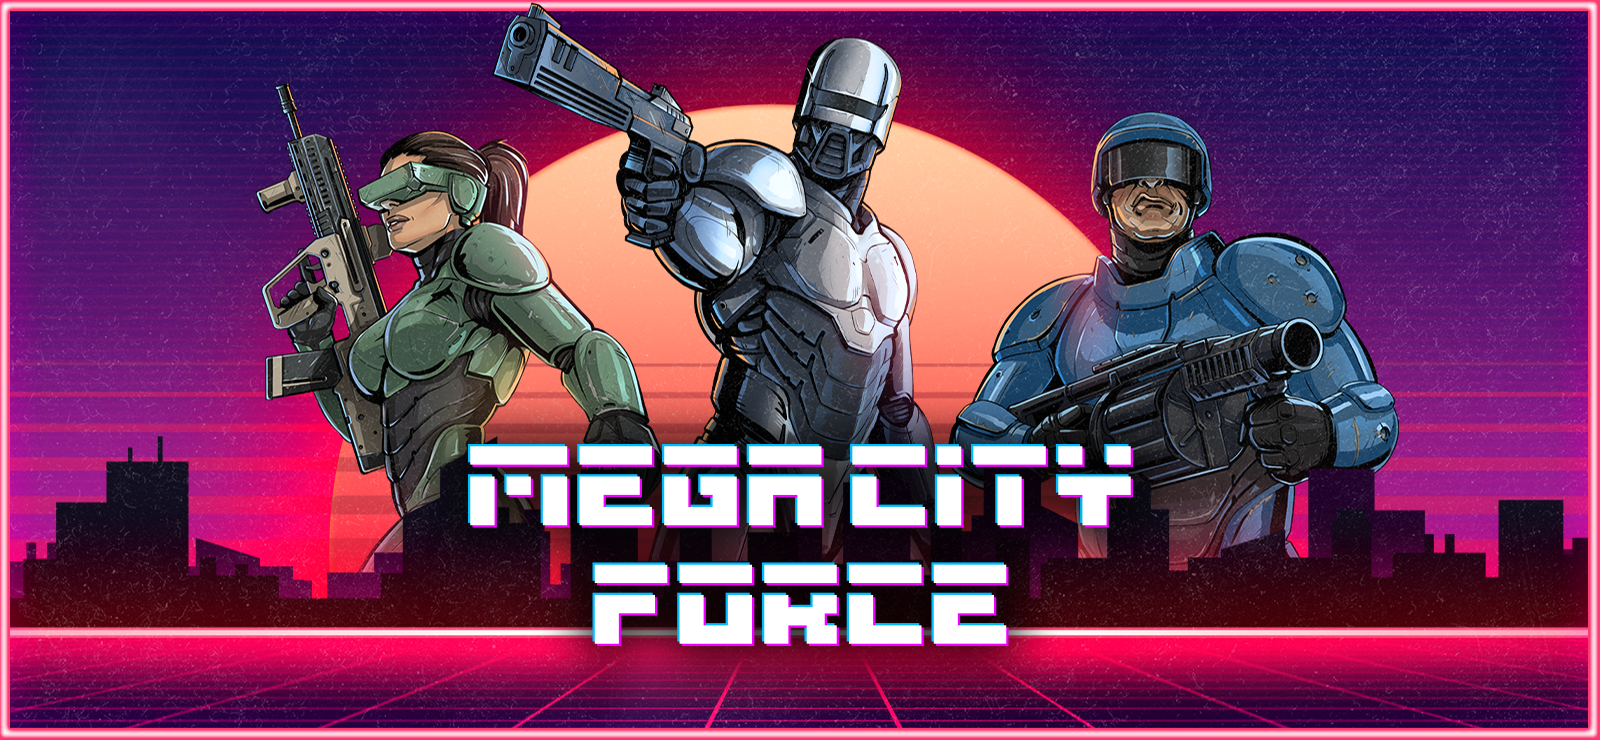 Mega City Force